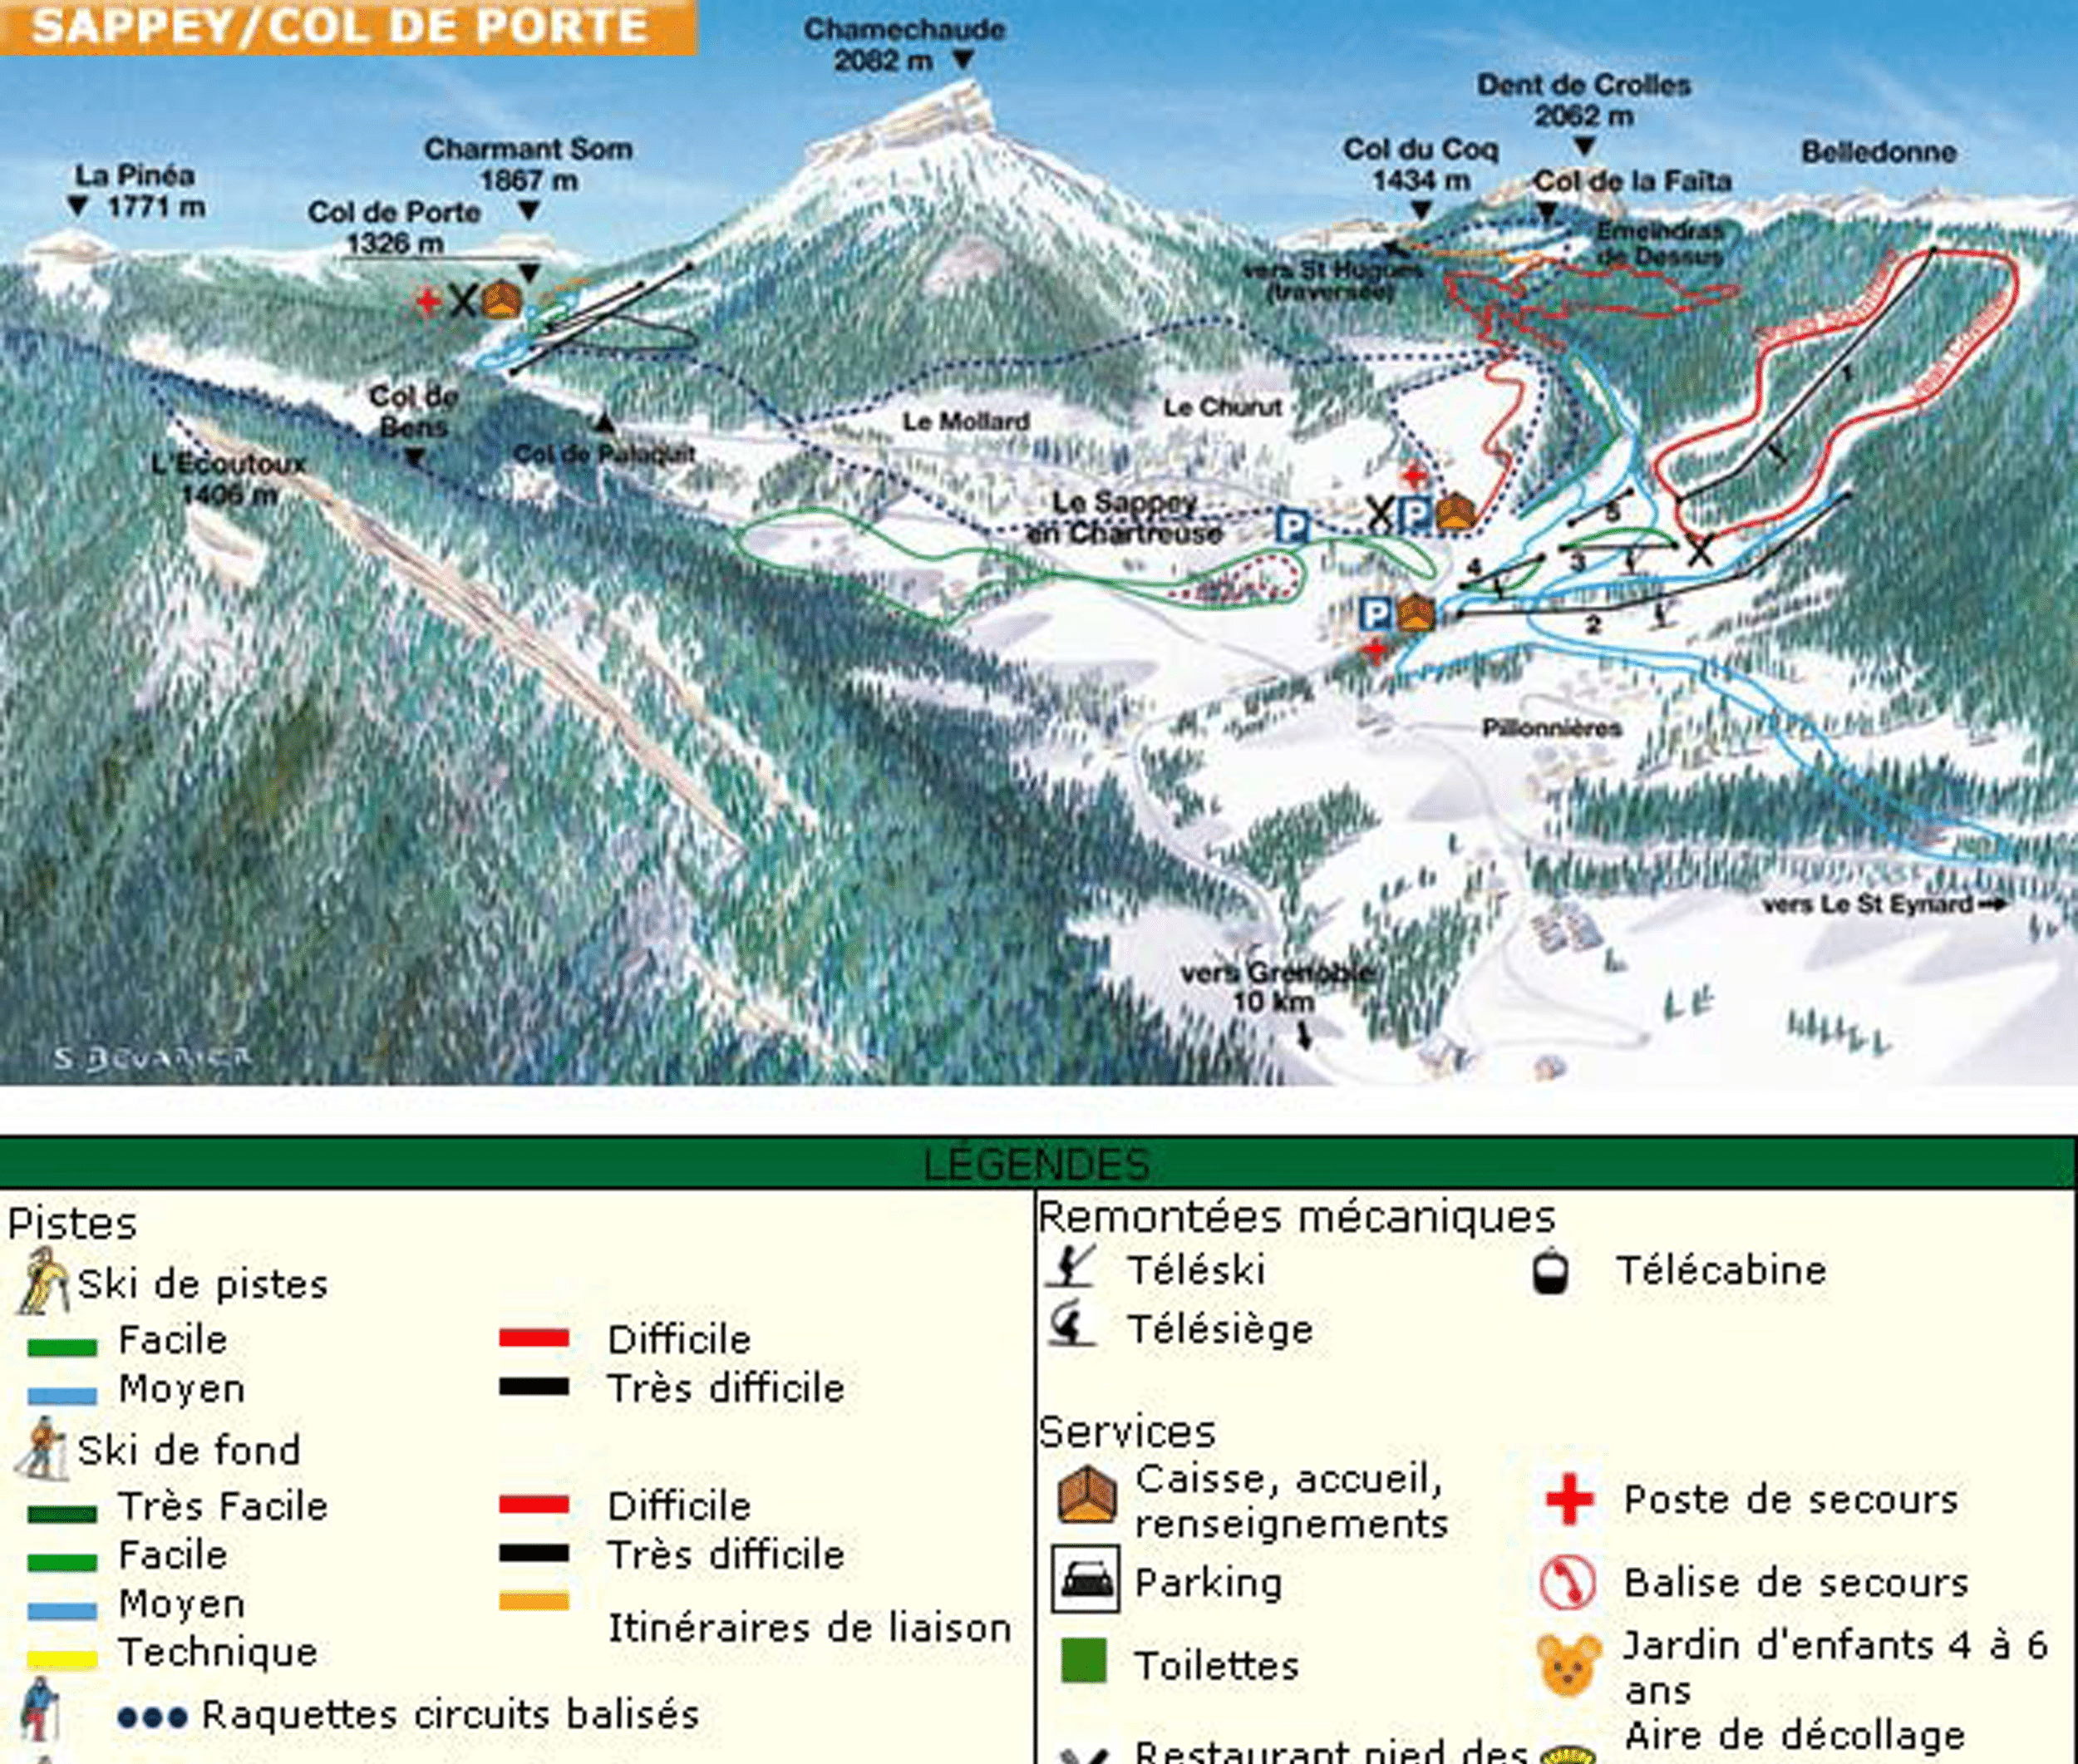 La sappey en chartreuse - Plan des pistes de ski de fond